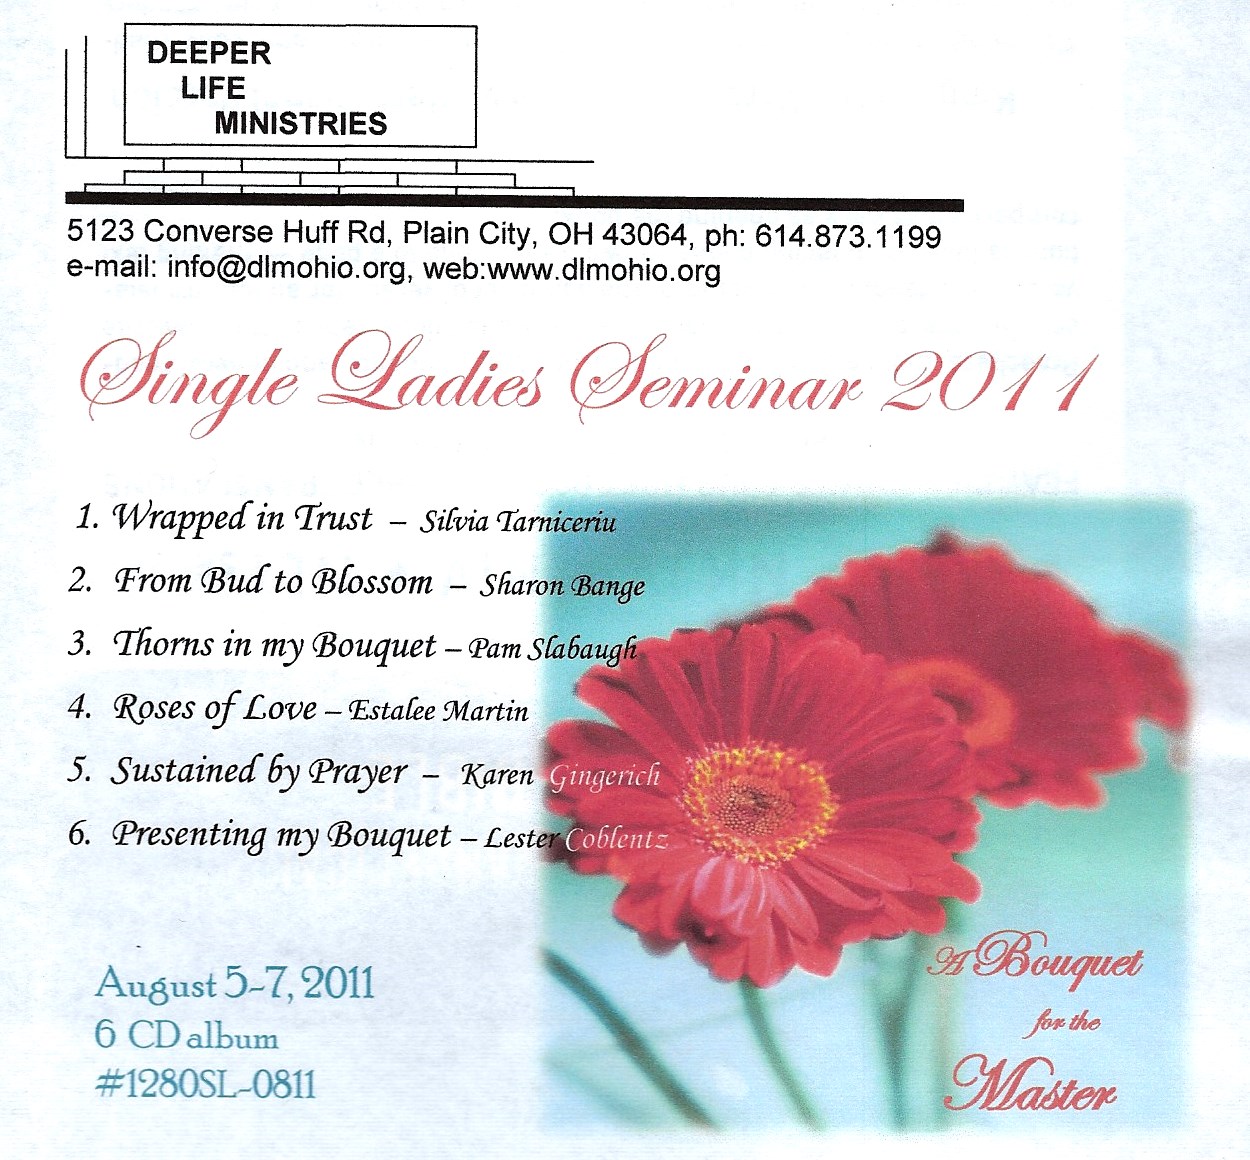 2011 SINGLE LADIES SEMINAR 6 CD album